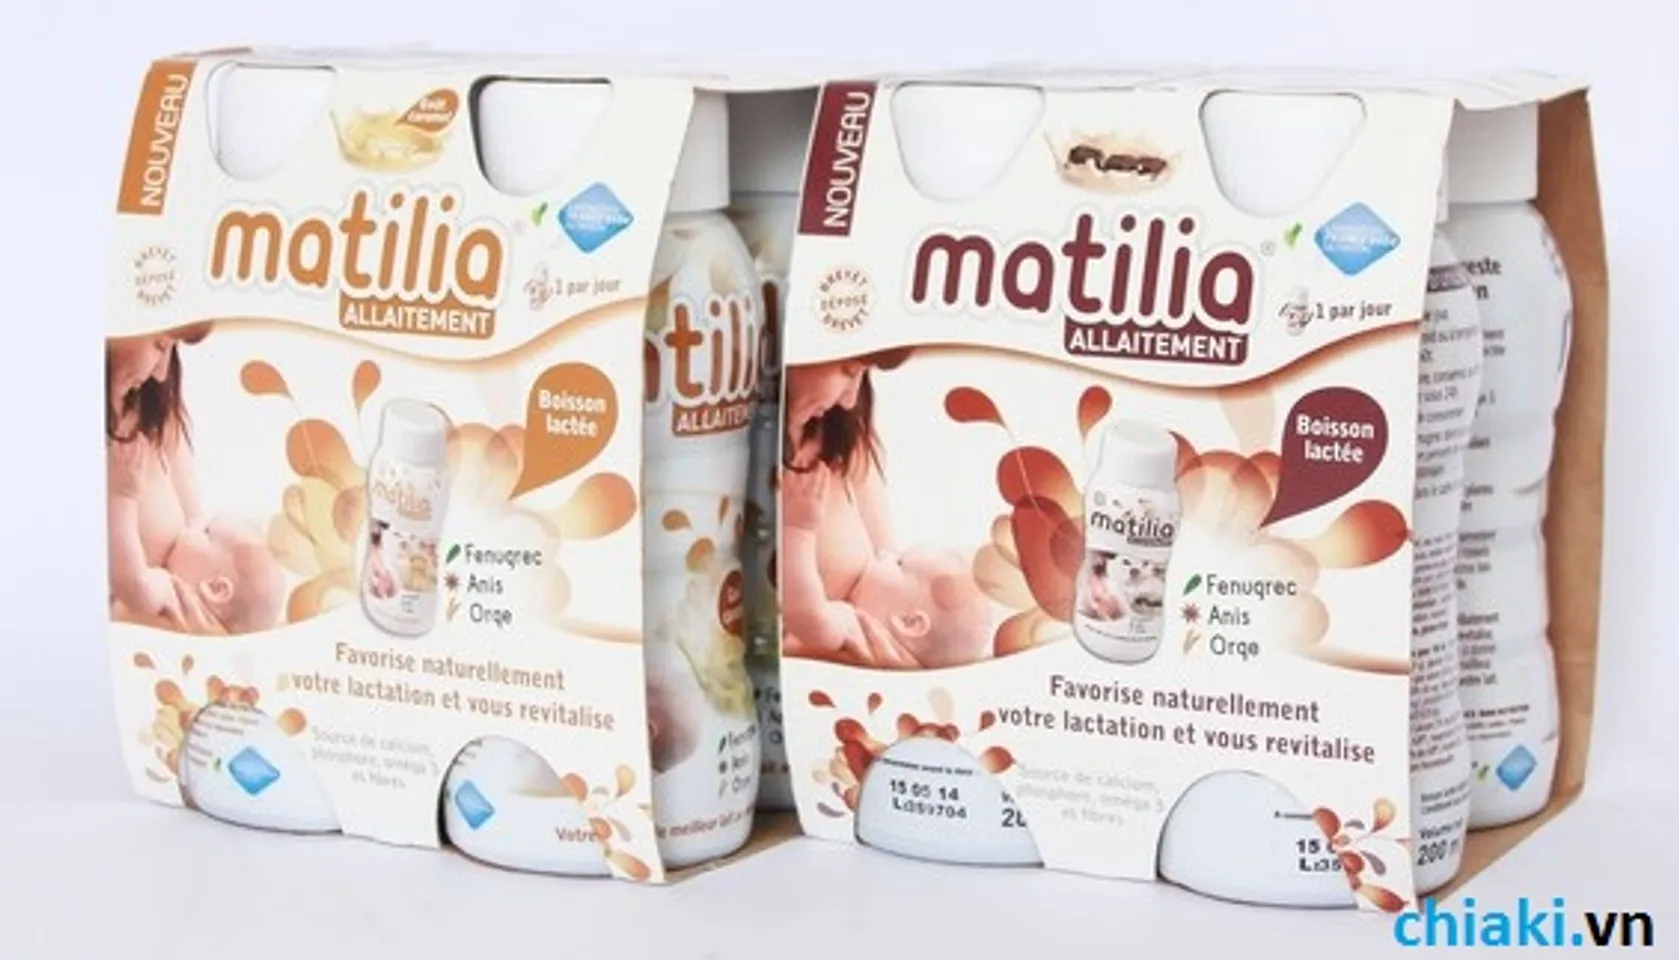  Sữa Matilia Allaitement lựa chọn của phụ nữ thời kì cho con bú